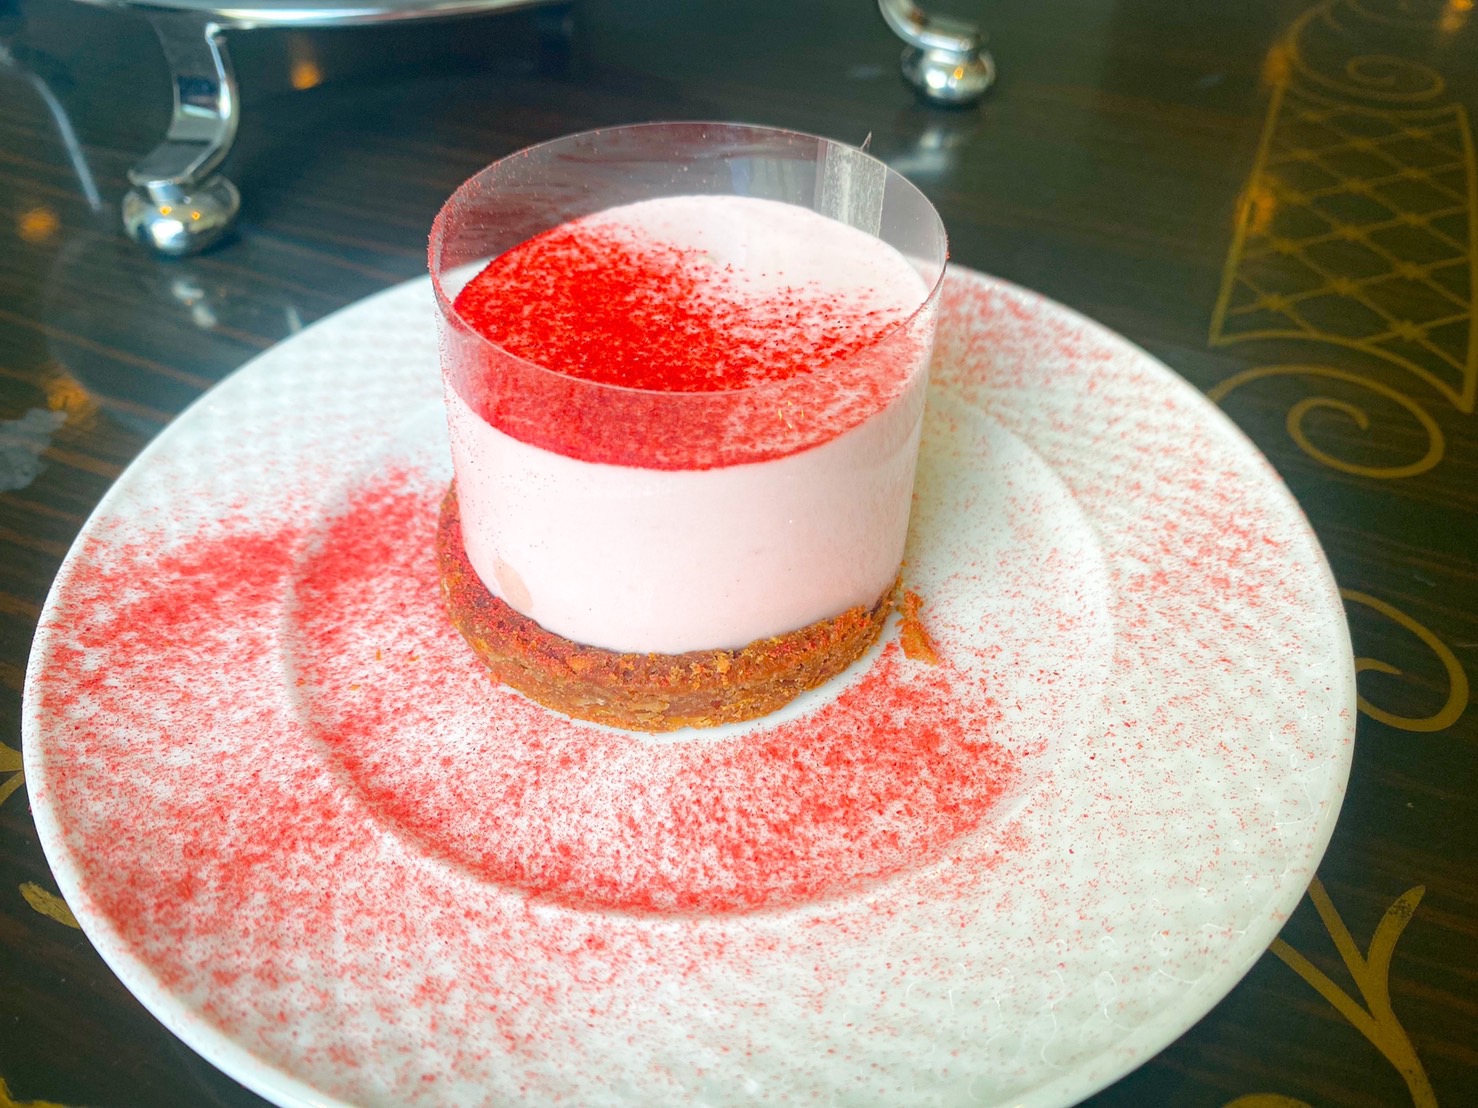 帝国ホテル東京 「Strawberry Pink Afternoon Tea」